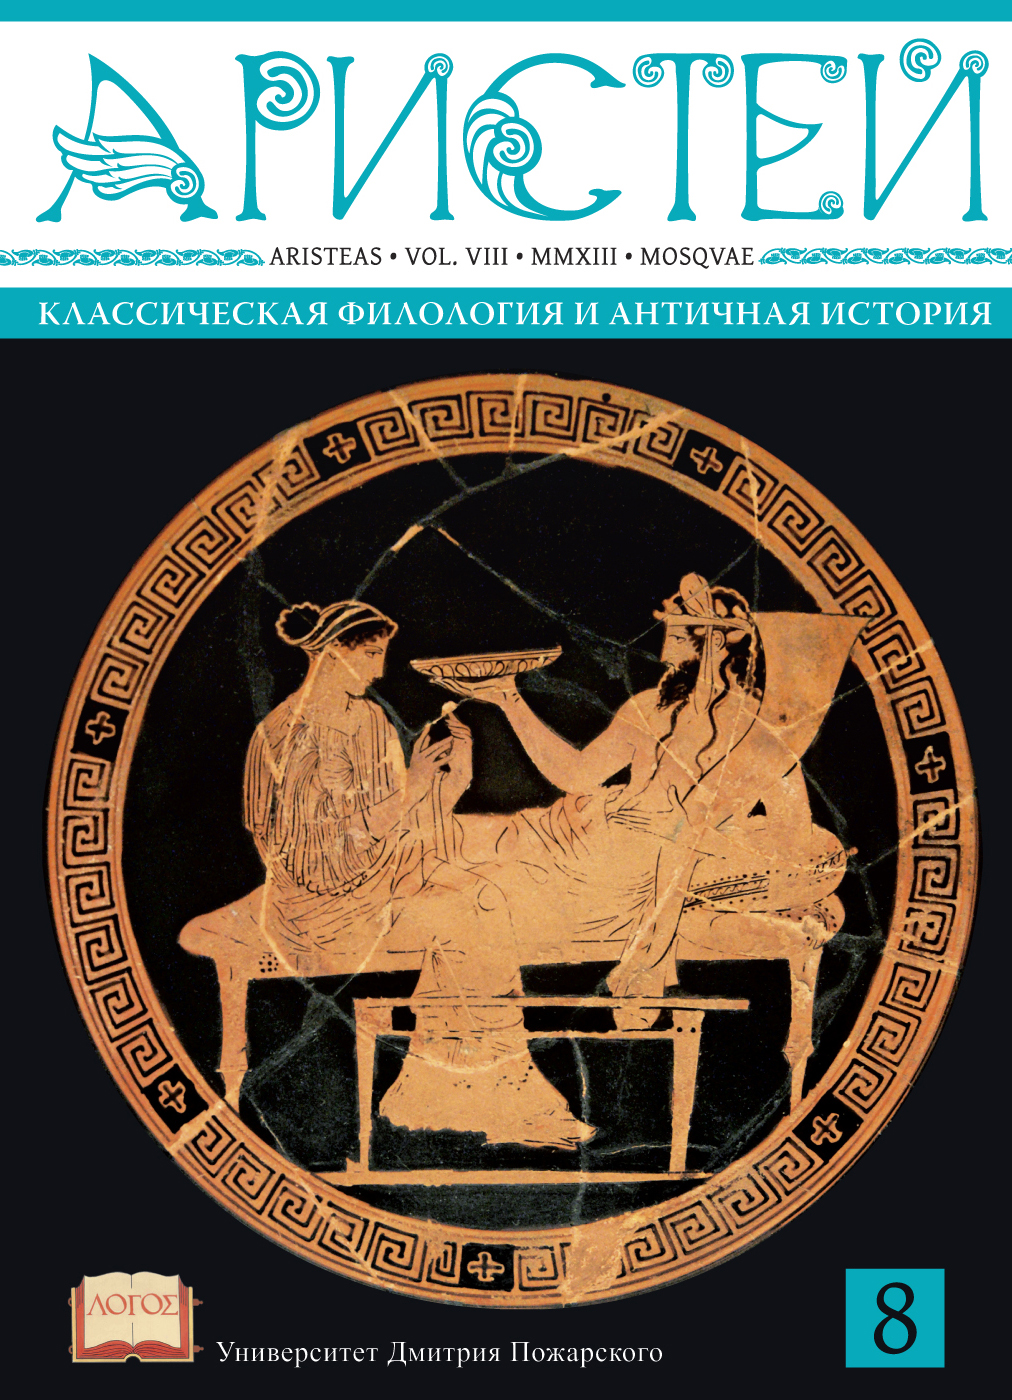 Журнал Аристей: вестник классической филологии и античной истории. Том VIII